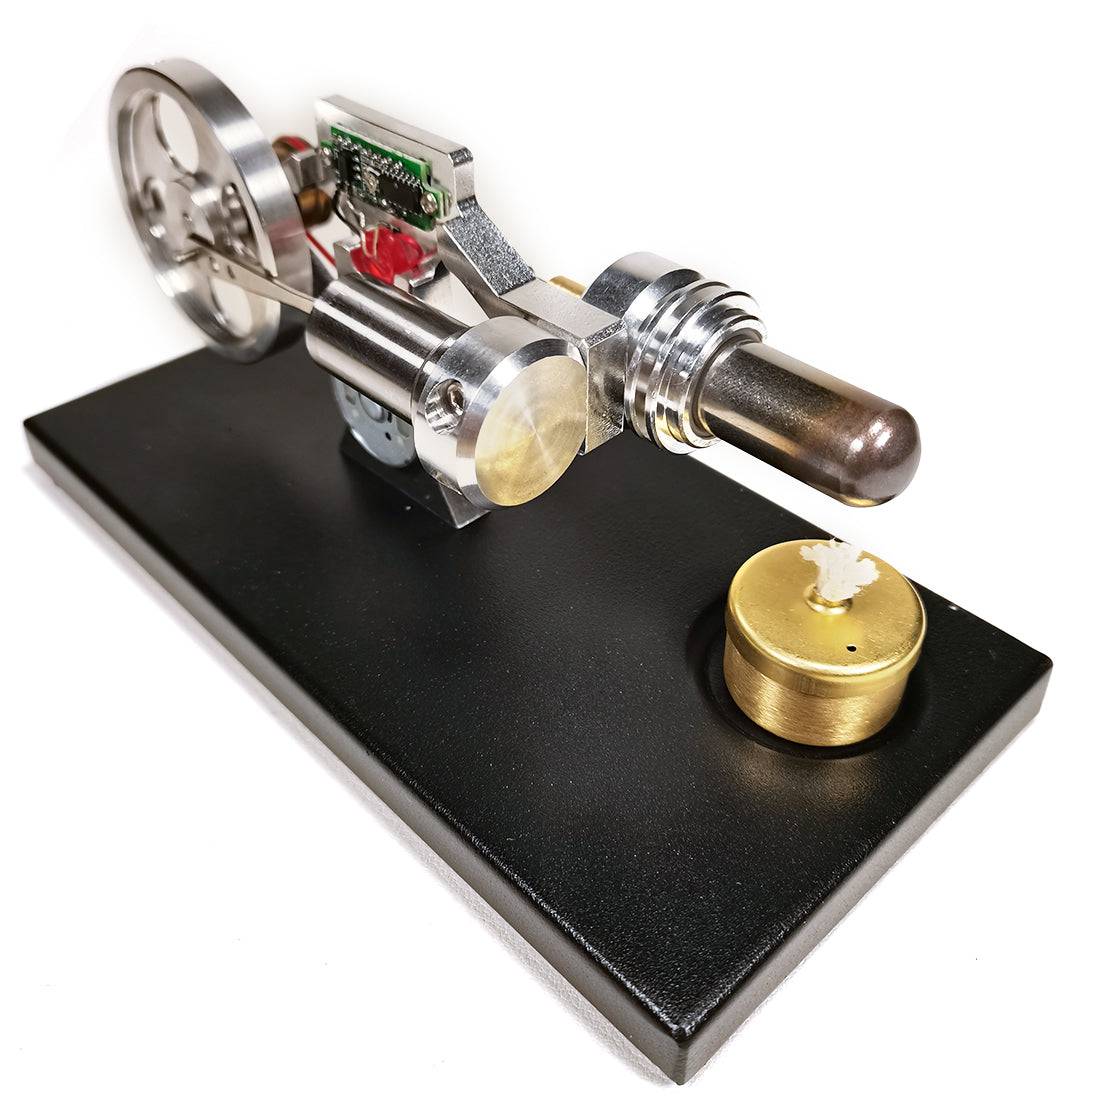 γ Type Digital Stirling Engine Model with Glow Lamp Bead  Science Experiment Toy - stirlingkit